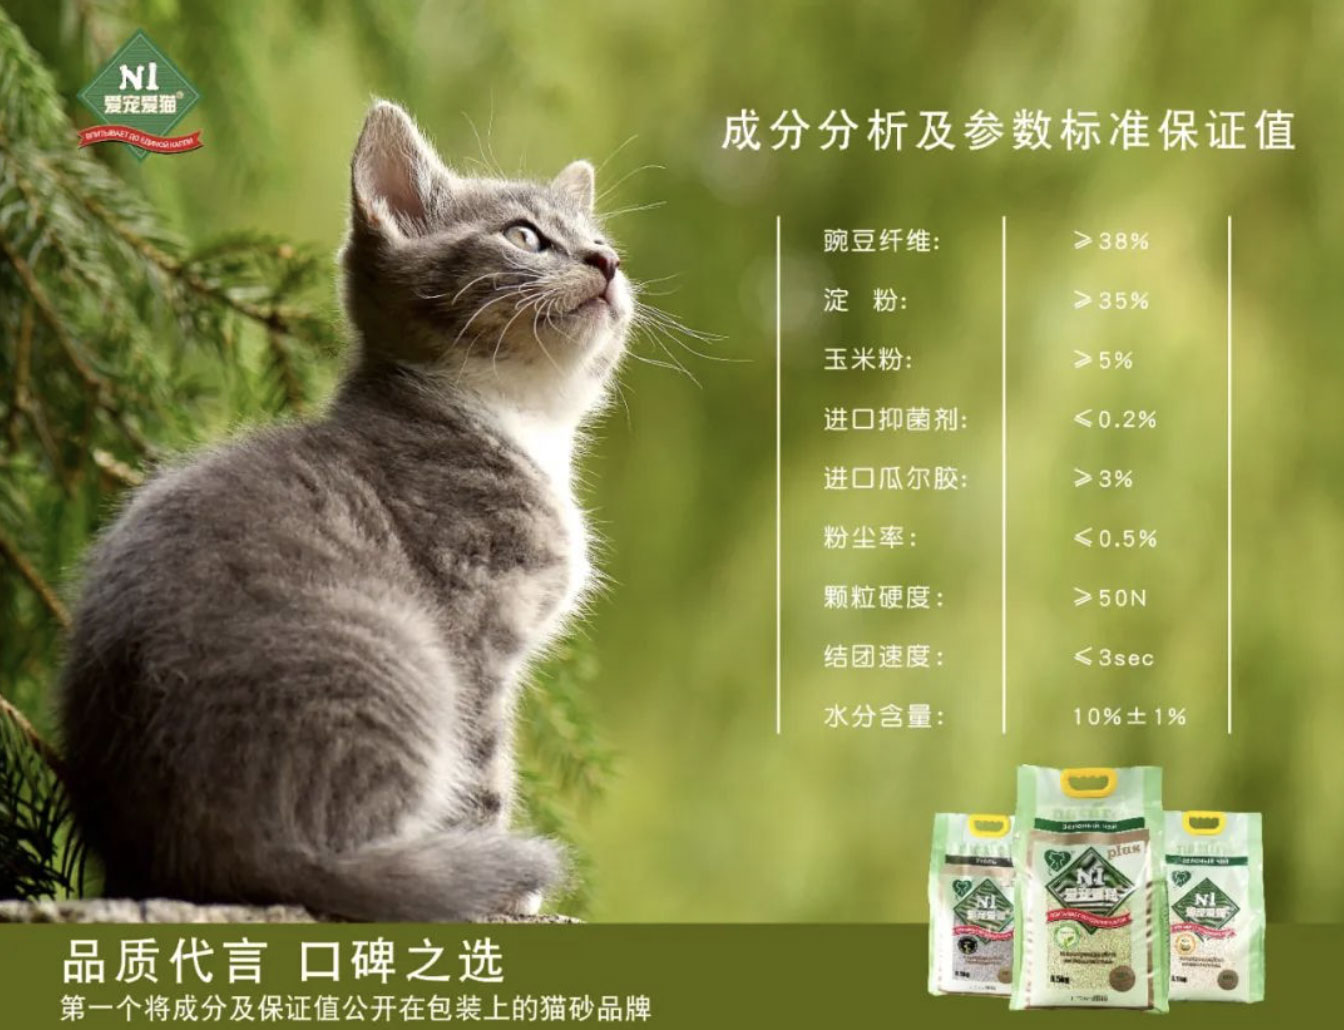 荆州爱宠爱猫： N1猫砂新包装会公布成分保证值，坚持做猫砂行业引领者